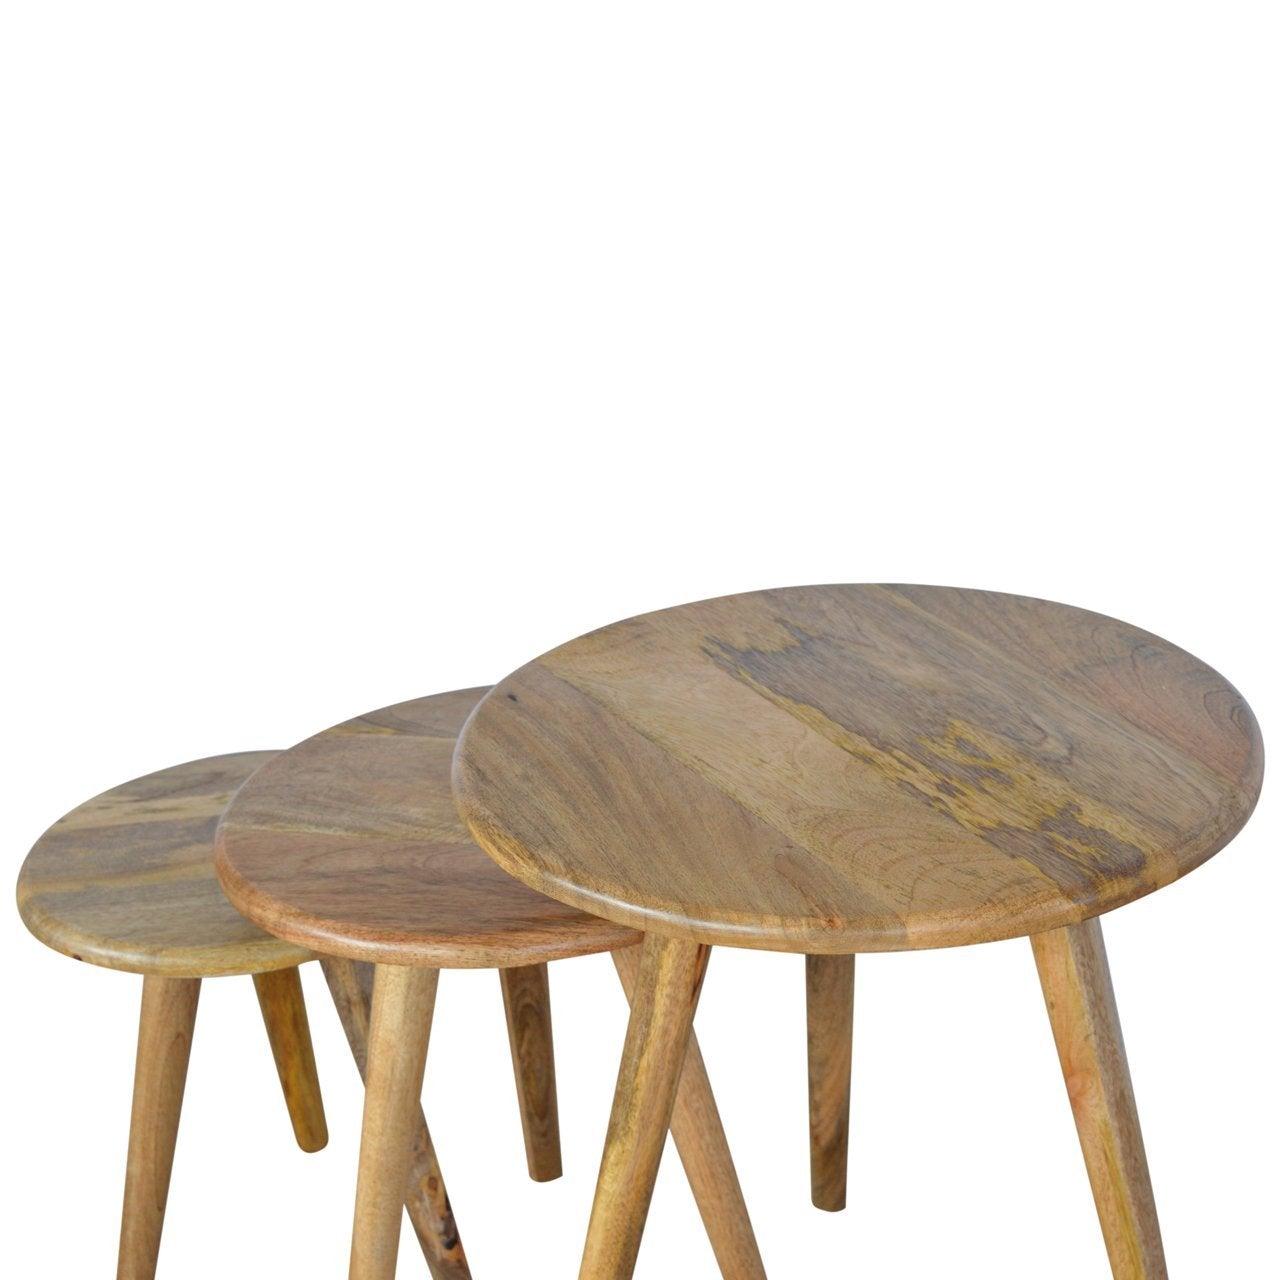 Nordic style stool set of 3 - crimblefest furniture - image 8